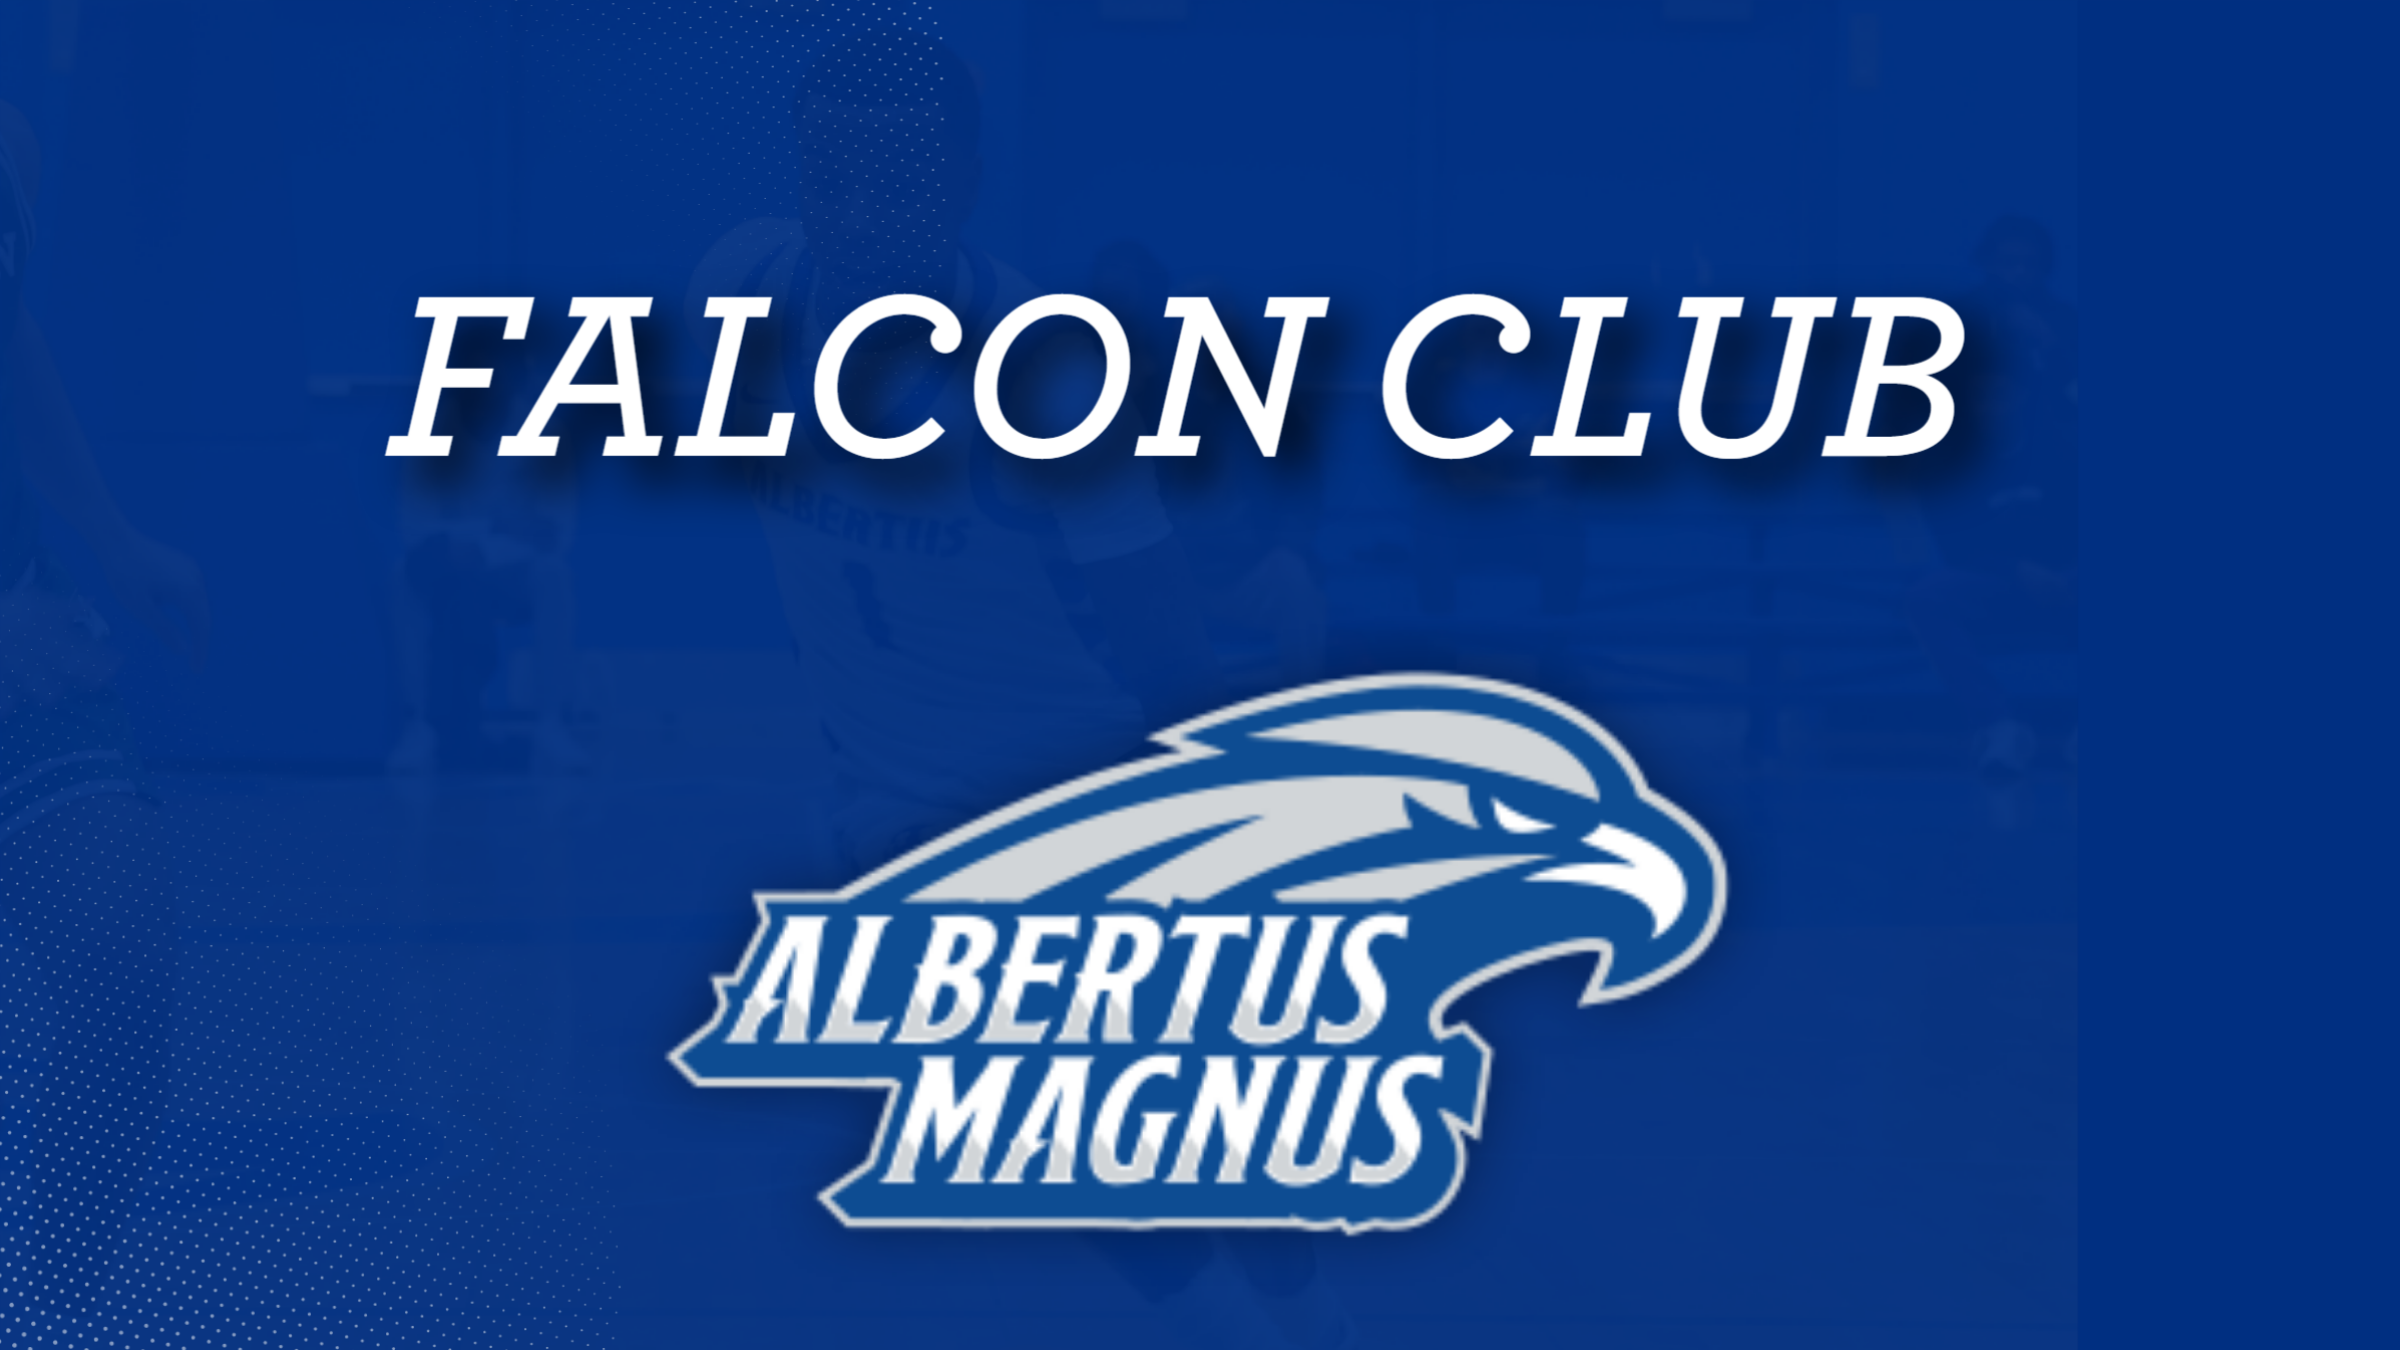 Albertus Magnus College Athletic Department Announces Formation of the Falcon Club